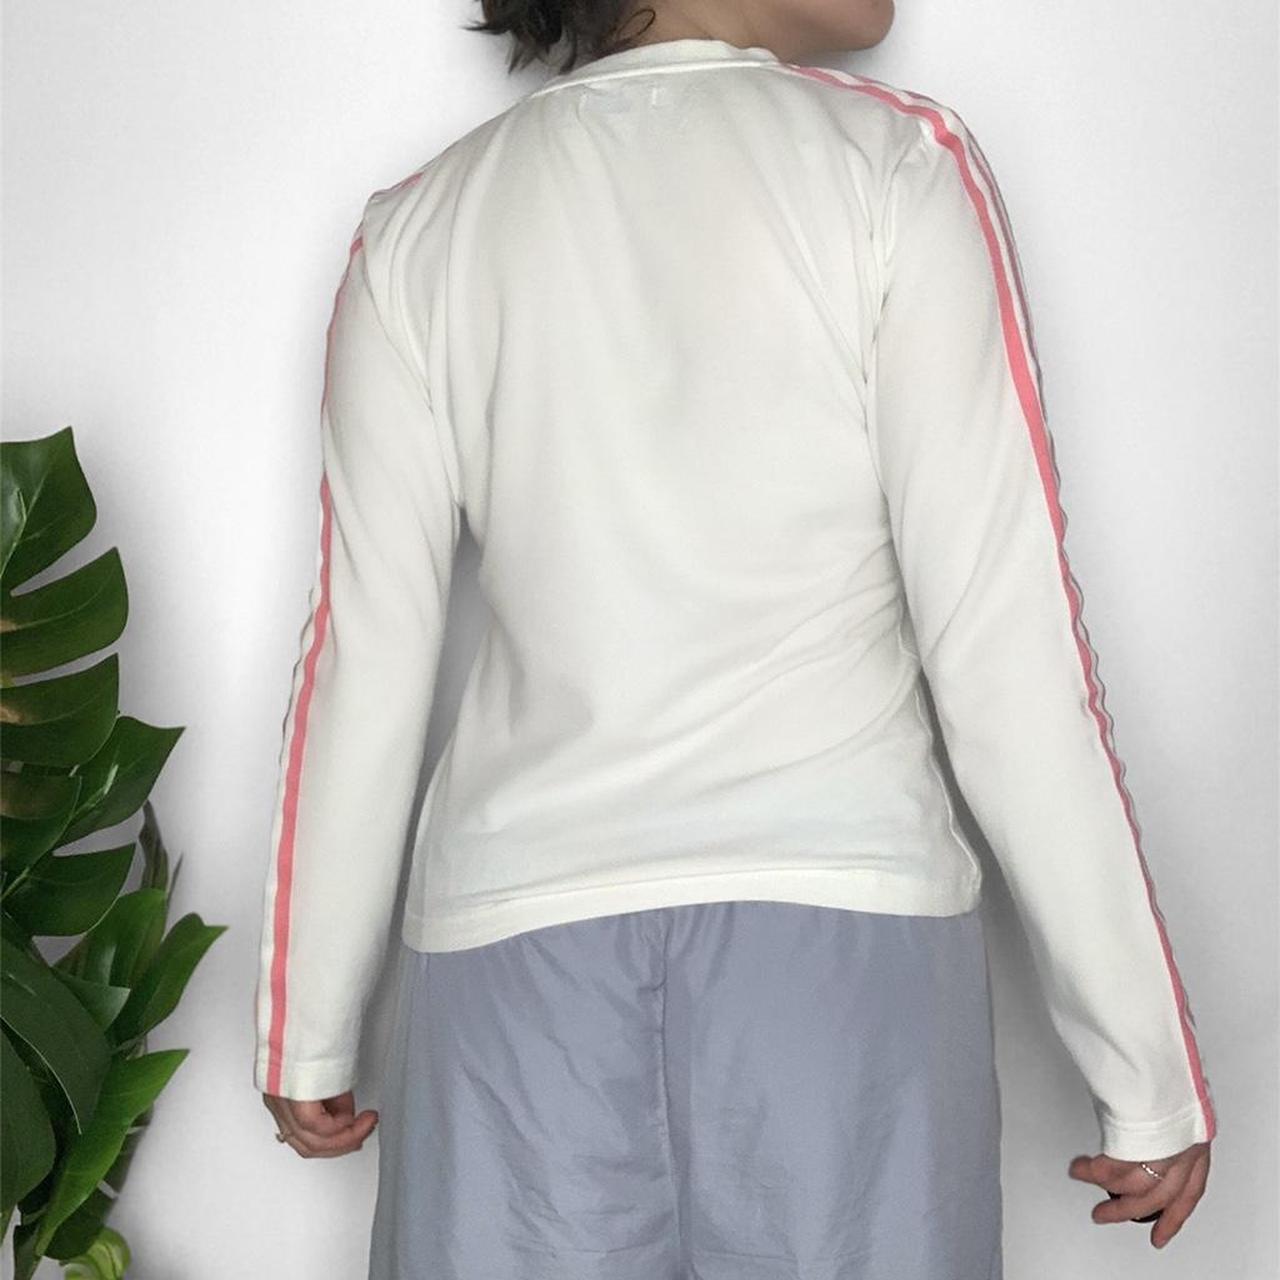 Rare Adidas originals vintage y2k streetwear long sleeved top